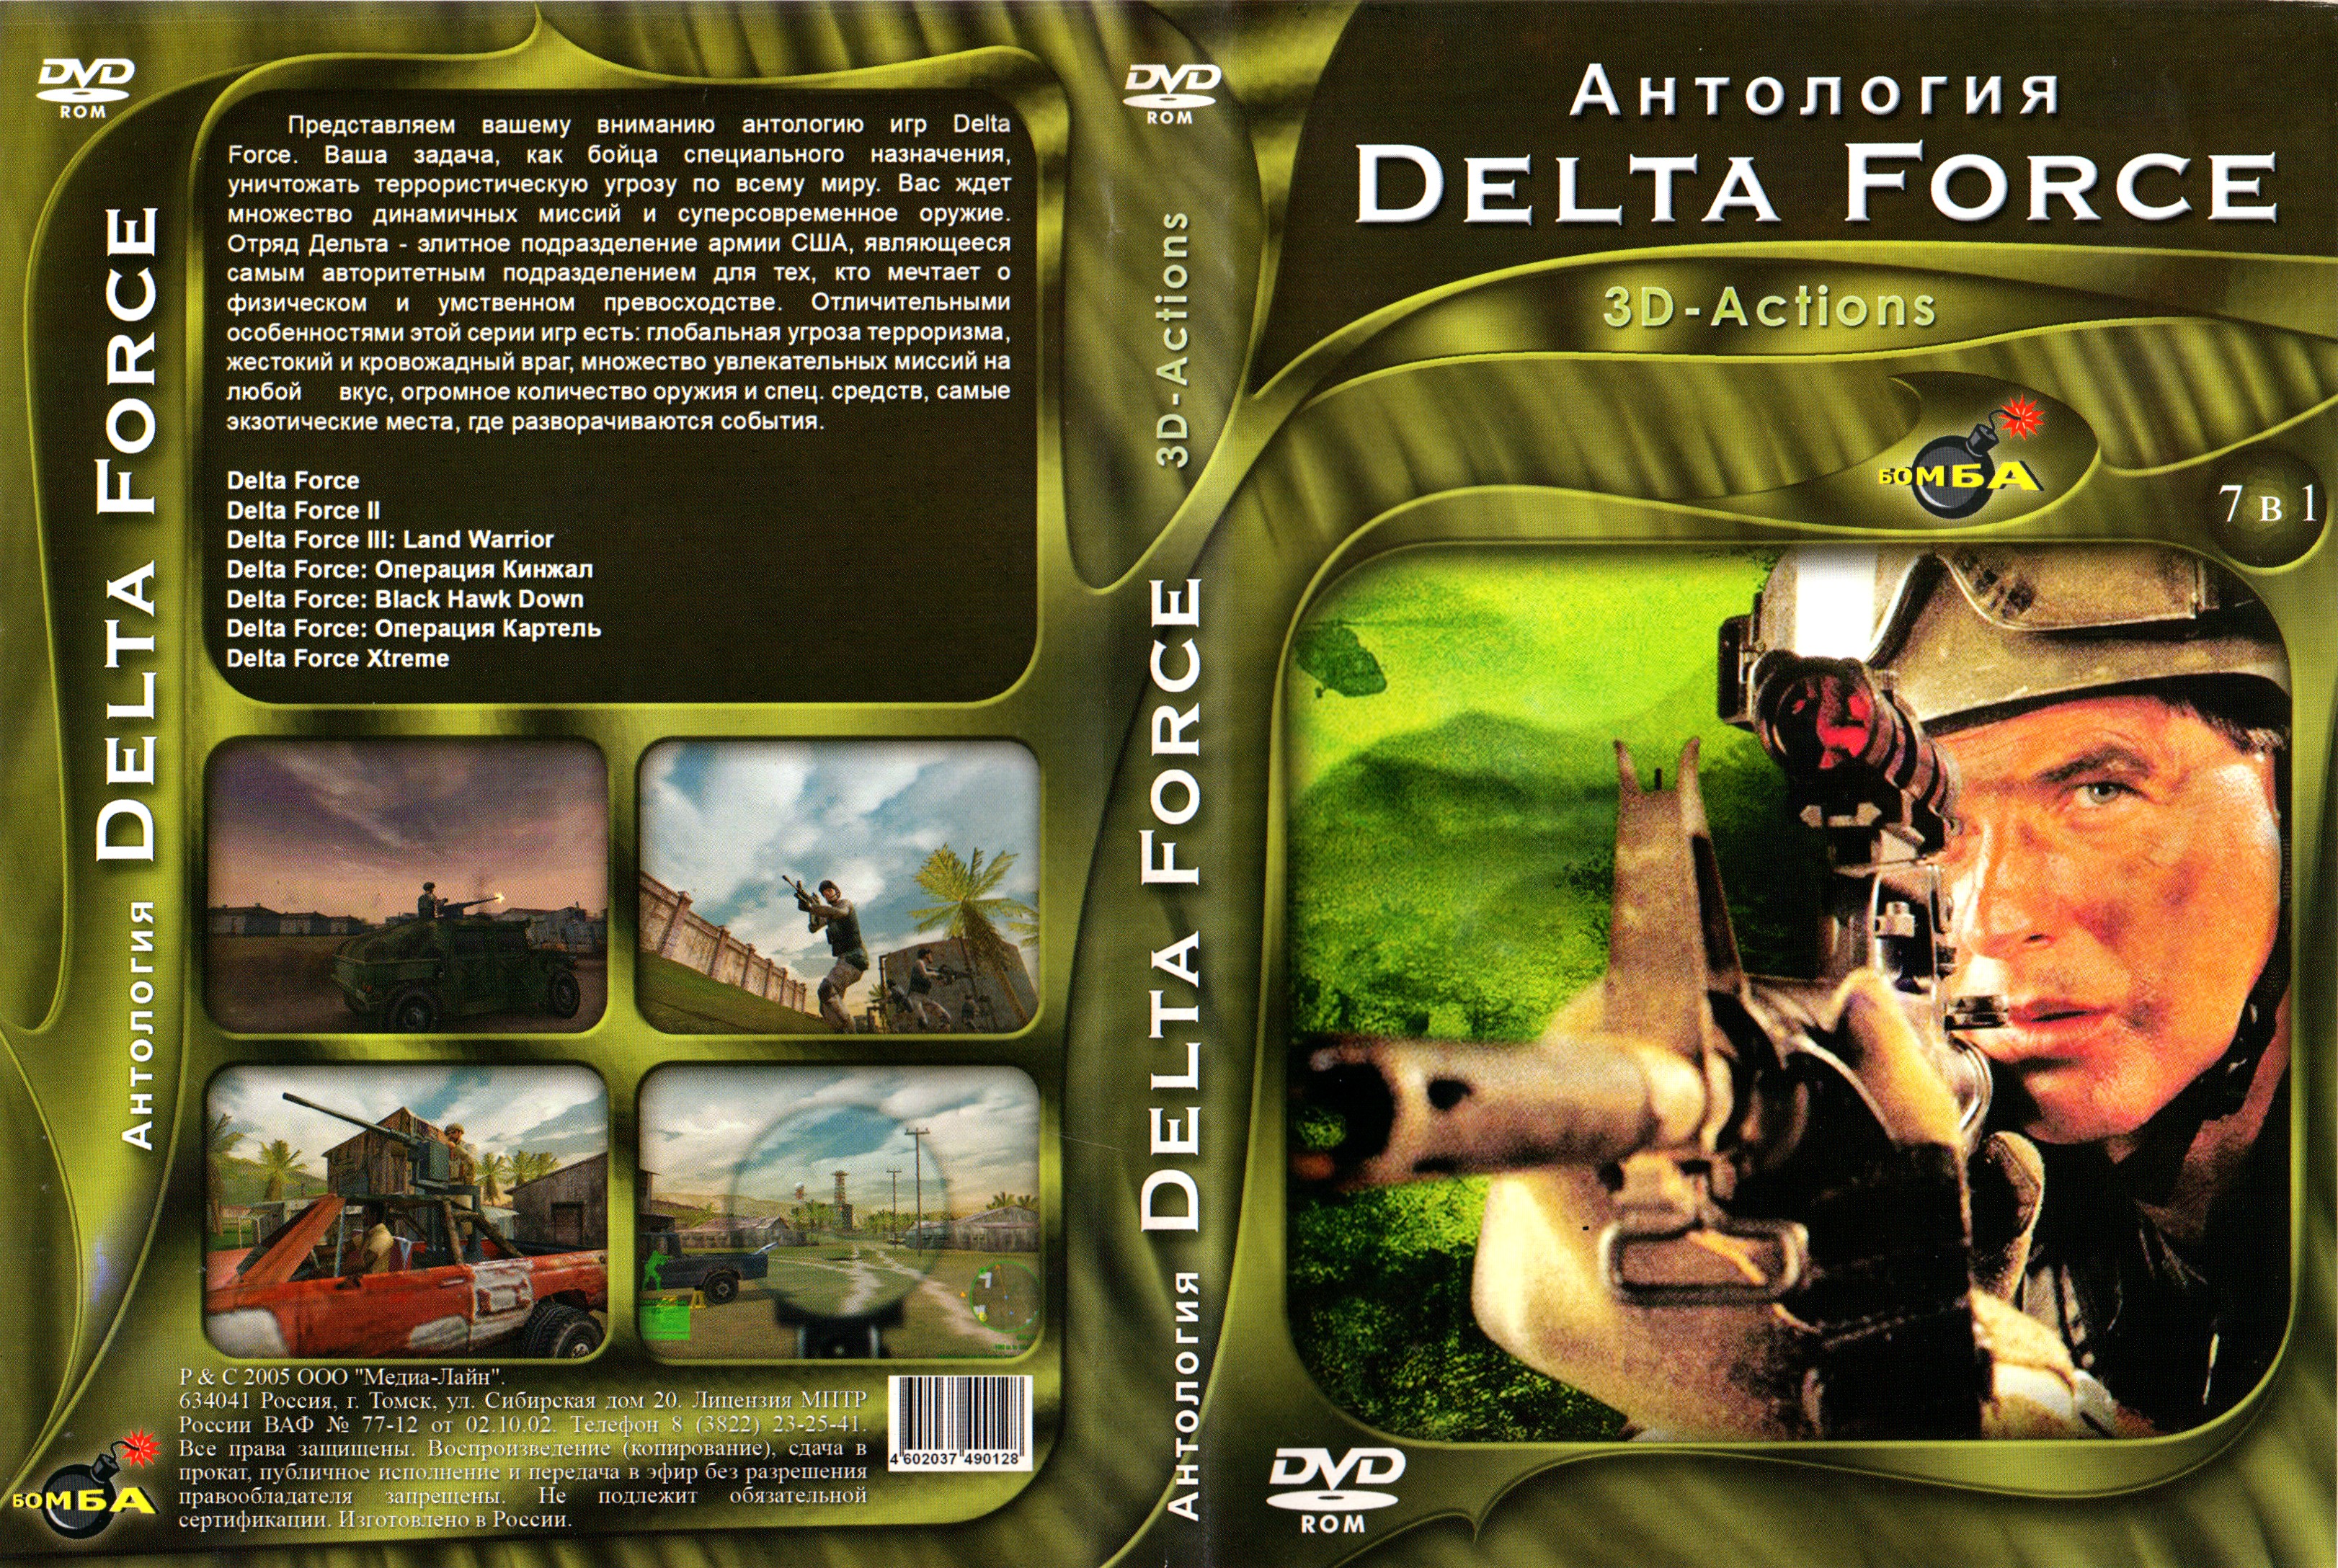 Антология человека. Delta Force 2 антология. Delta Force антология диск. Антология симуляторов диск. Антология игр для мальчиков.